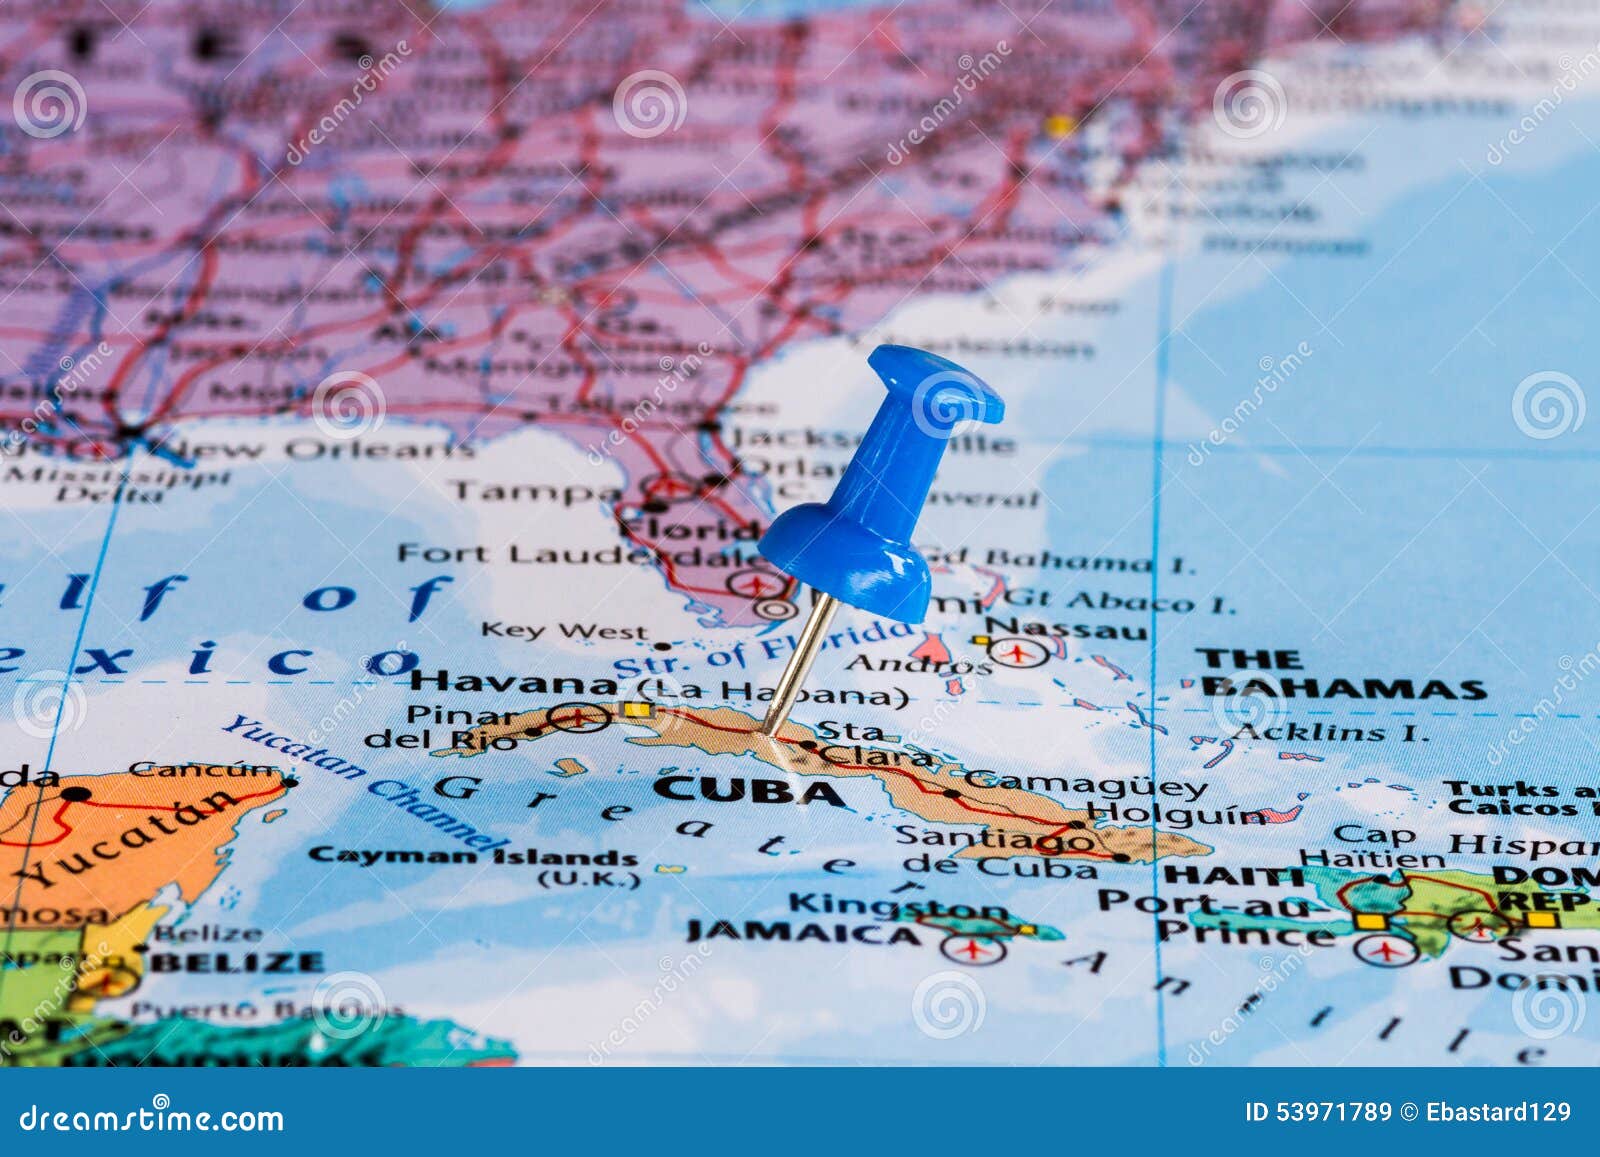 Karte von Kuba stockbild. Bild von nearsighted, papier - 53971789